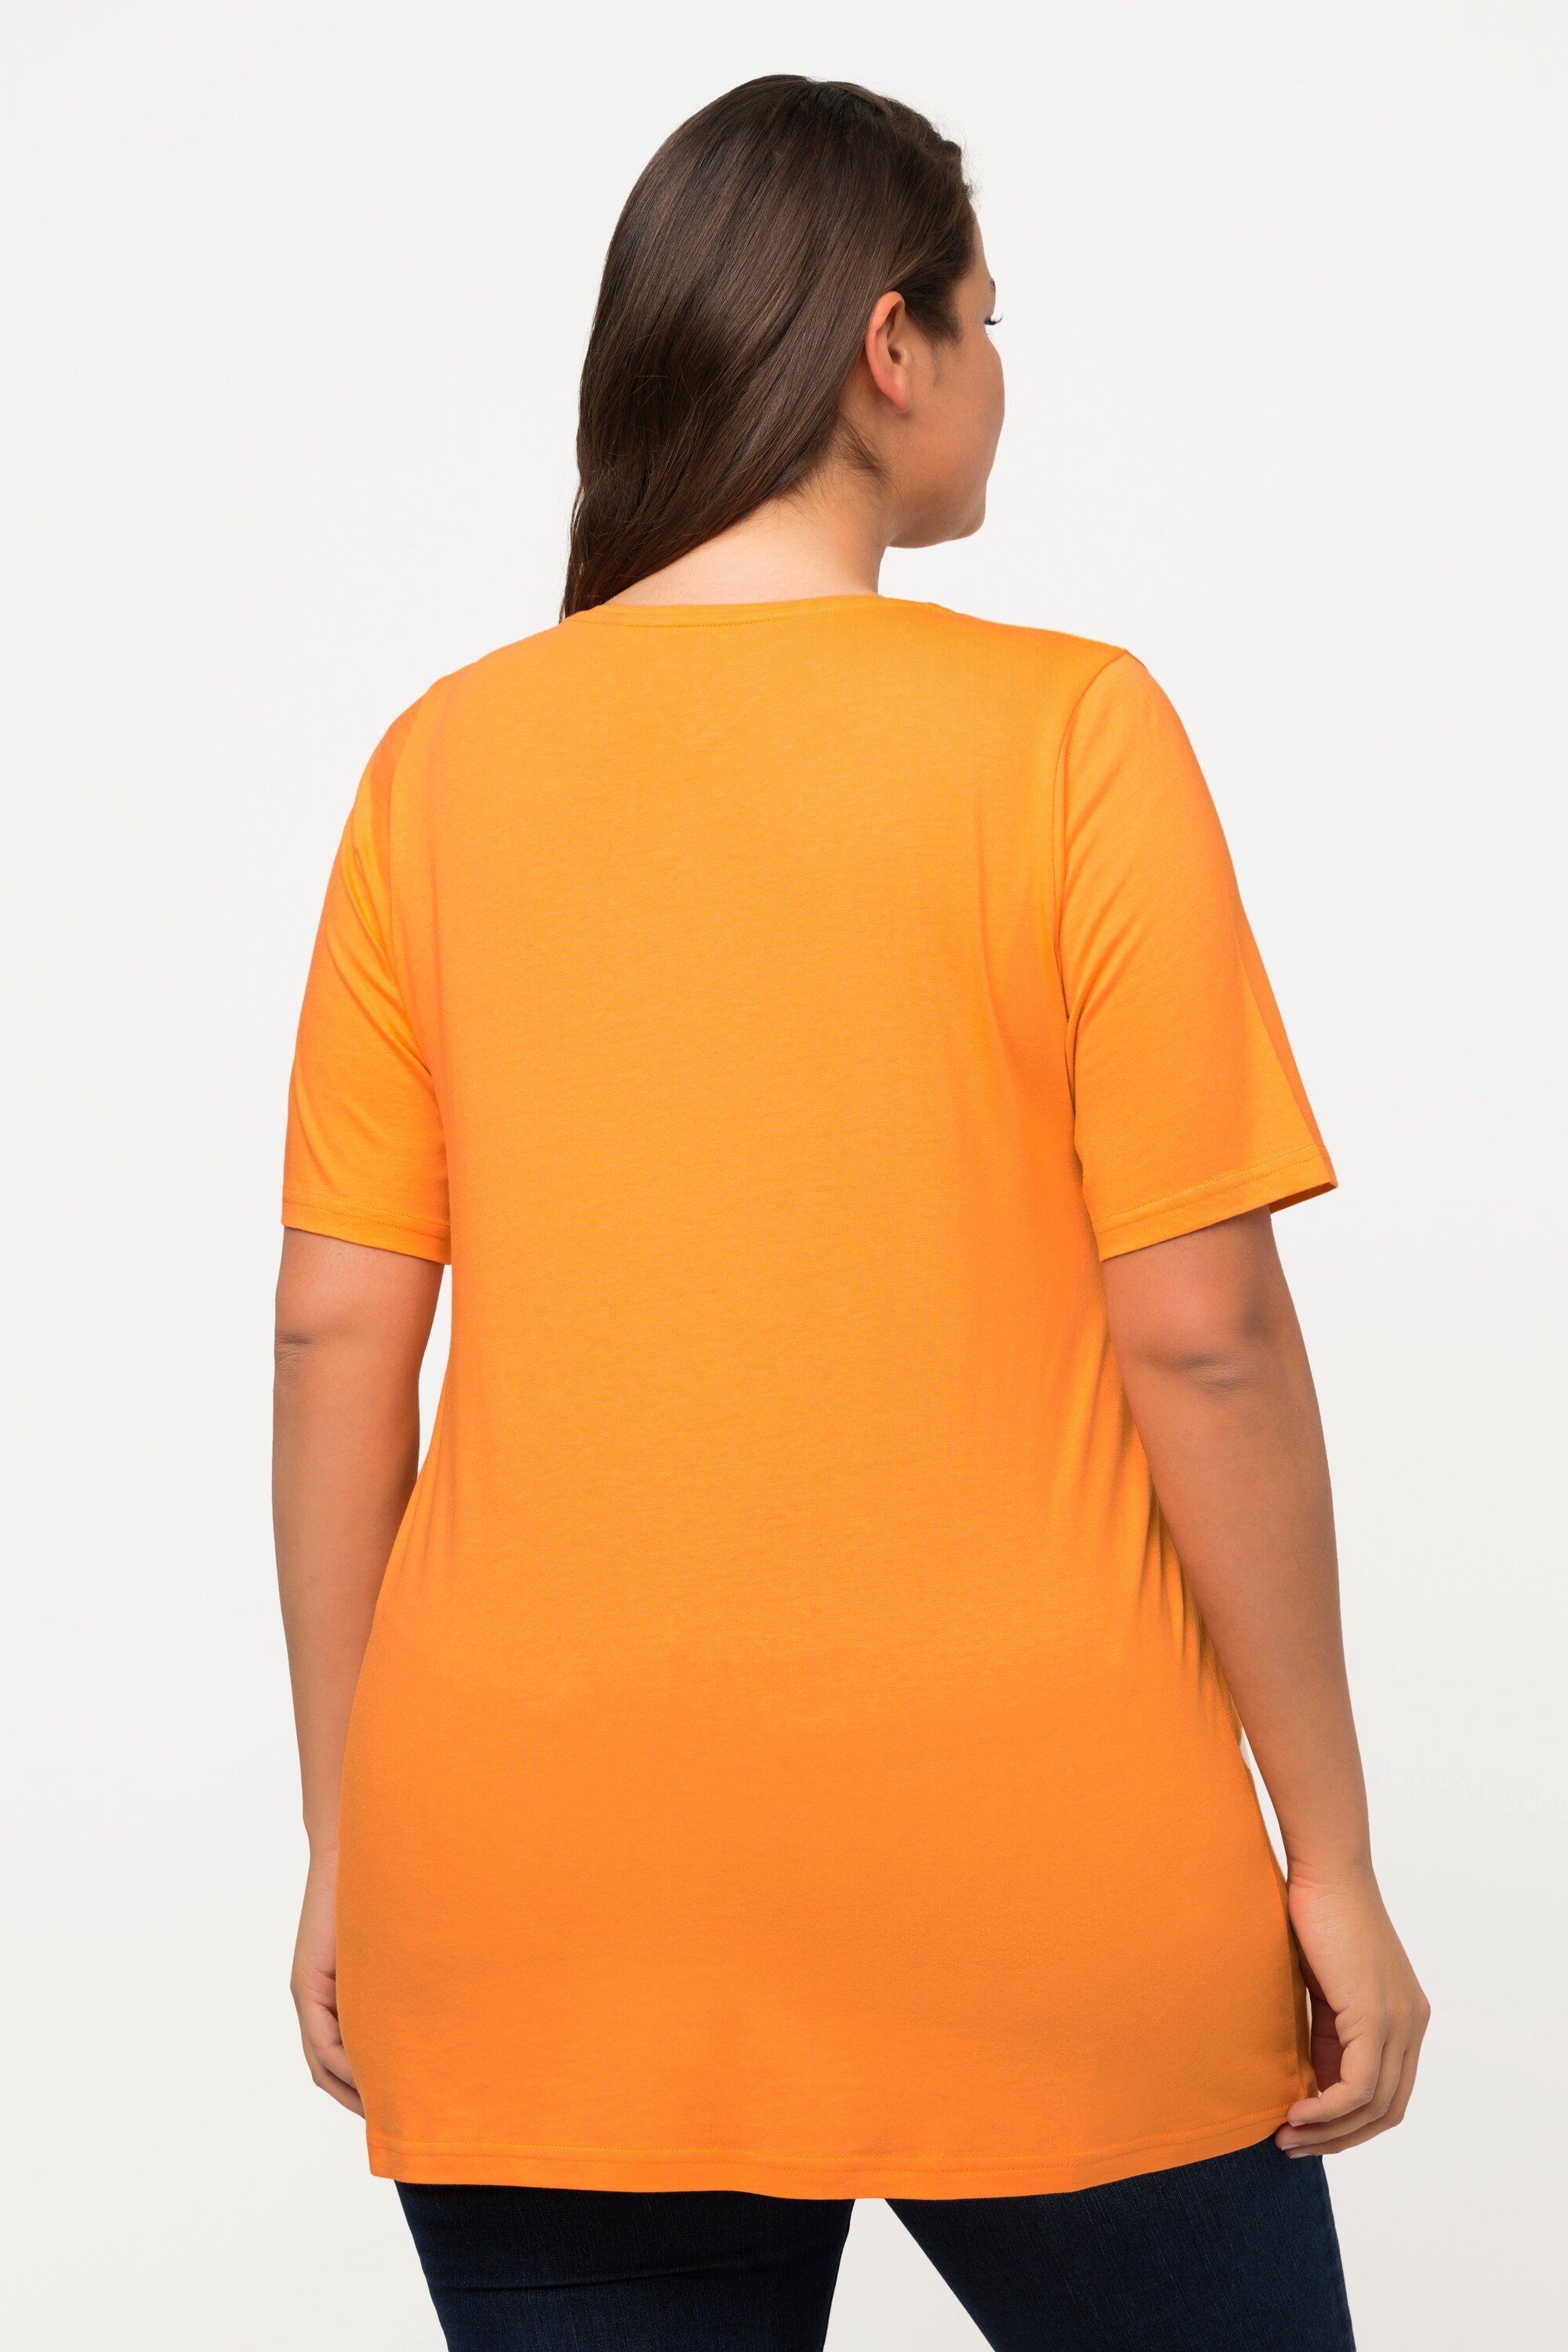 Halbarm Popken Rundhals Zierfalten Ulla orange Rundhalsshirt A-Linie cantaloupe Modal T-Shirt